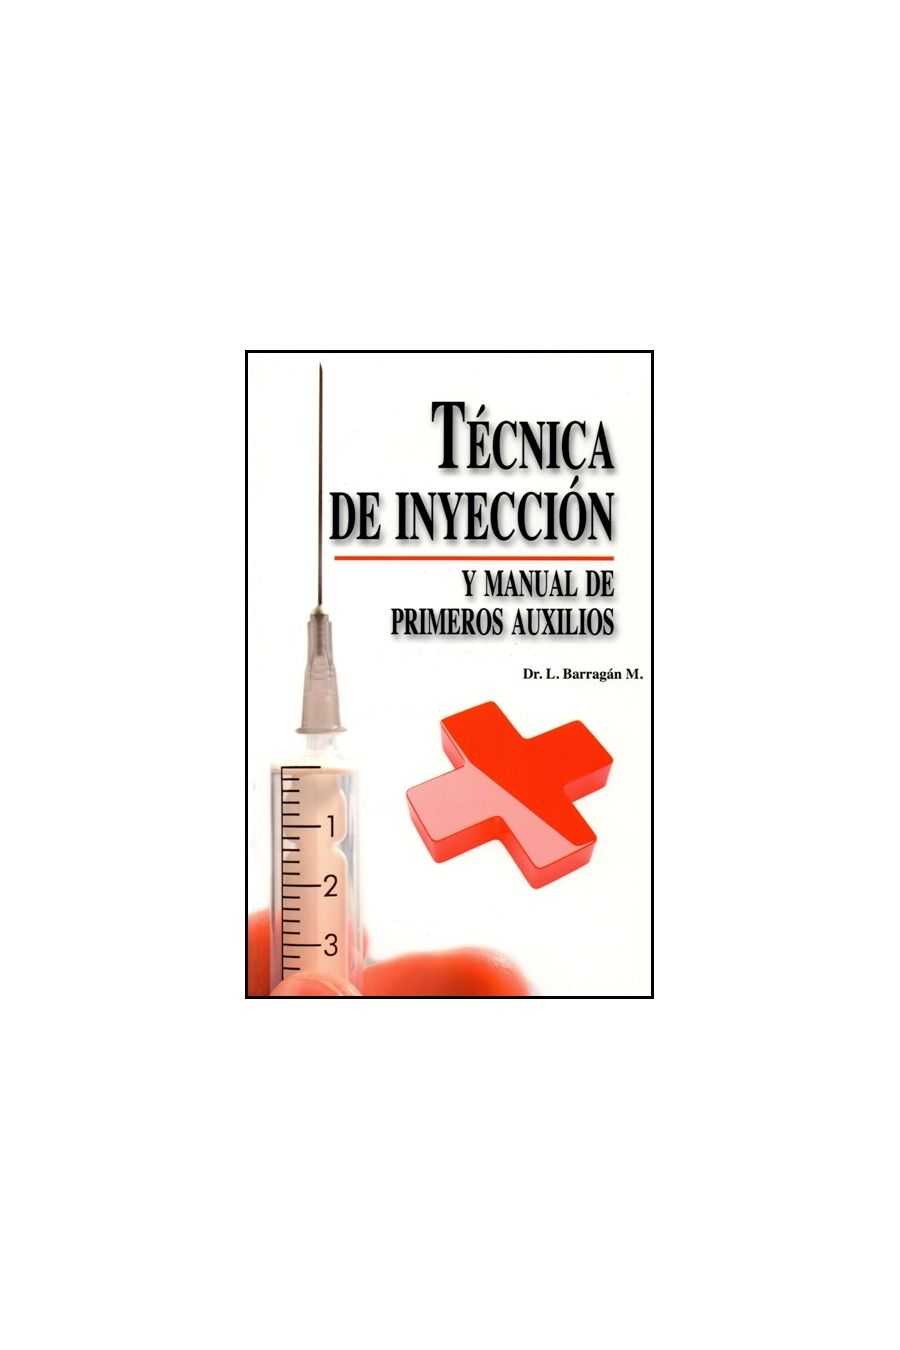 Técnica de Inyección y Manual de Primeros Auxilios. Barragán